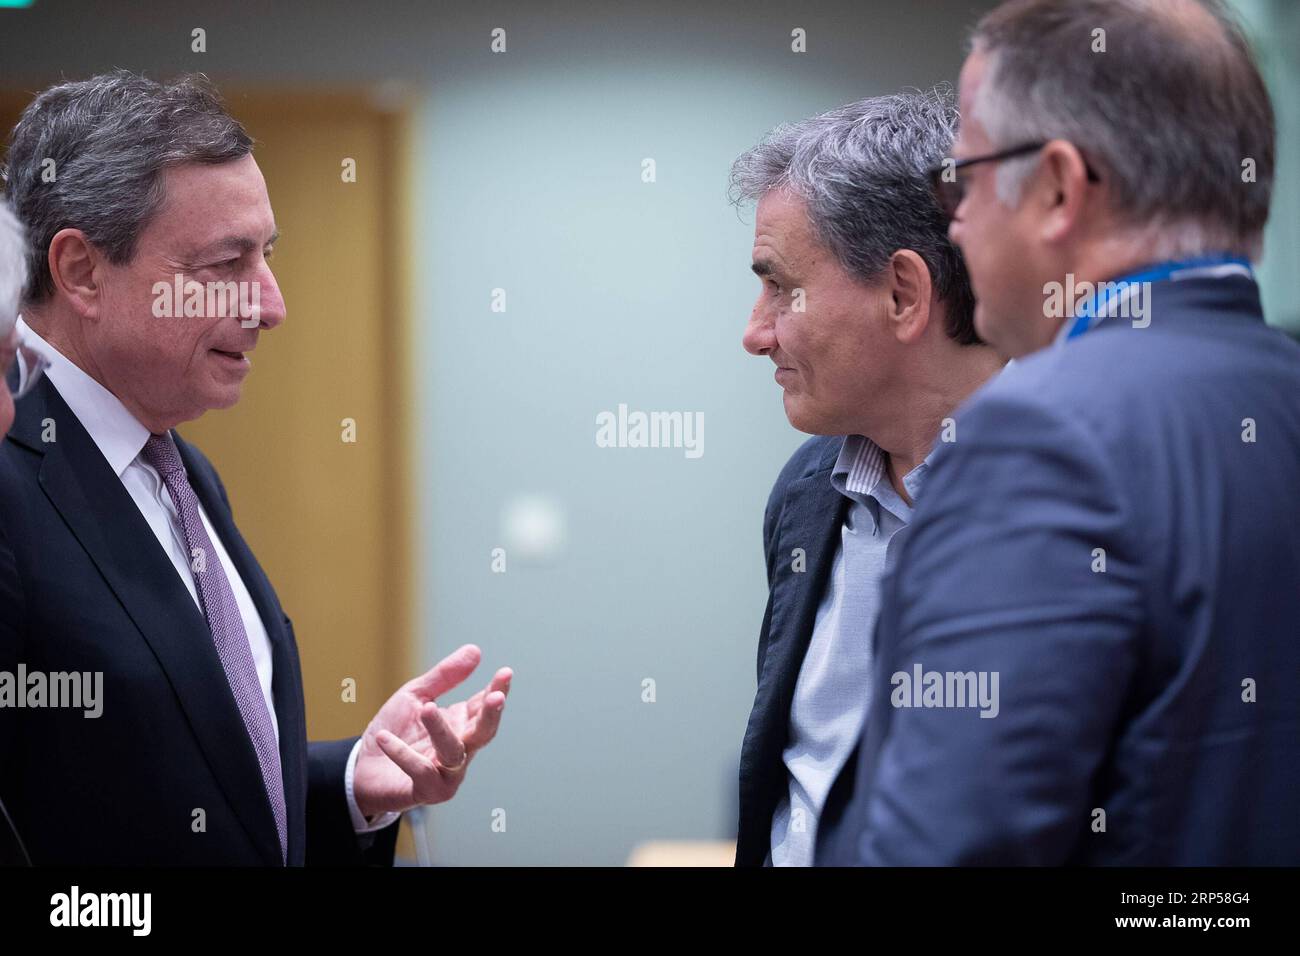 (181203) -- BRUXELLES, 3 dicembre 2018 -- il presidente della Banca centrale europea Mario Draghi (L) parla con il ministro greco delle finanze Euclid Tsakalotos (C) durante una riunione dei ministri delle finanze dell'Eurogruppo a Bruxelles, Belgio, 3 dicembre 2018. ) BELGIO-BRUXELLES-EUROGRUPPO-RIUNIONE DEI MINISTRI DELLE FINANZE THIERRYXMONASSE PUBLICATIONXNOTXINXCHN Foto Stock